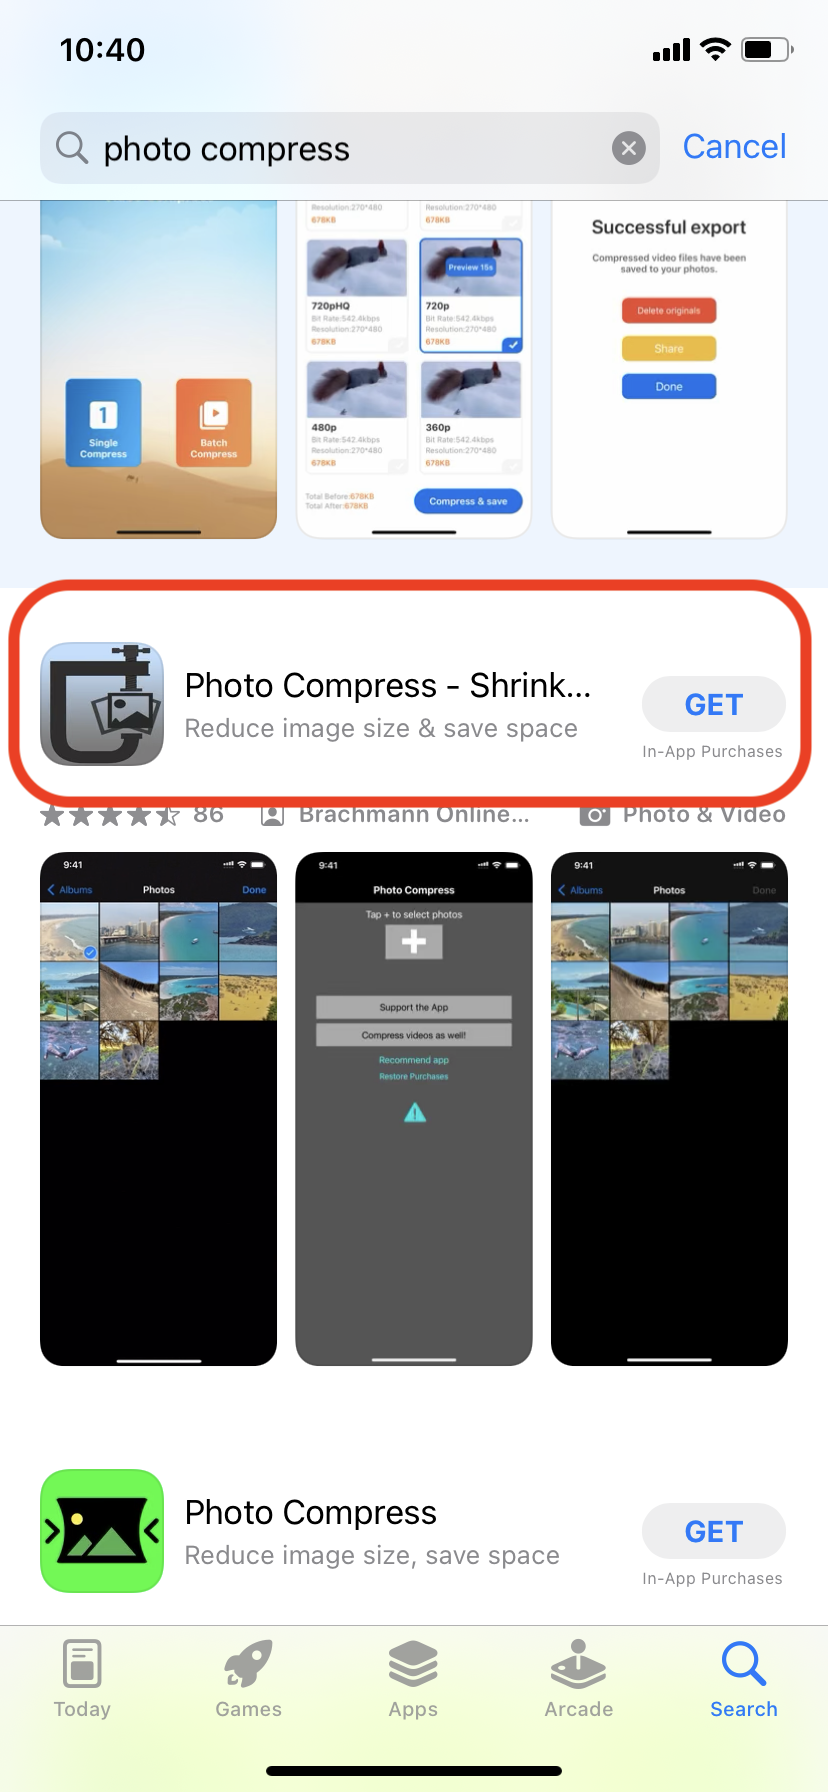 How To Compress Photos Using "Photo Compress" App: Step 1